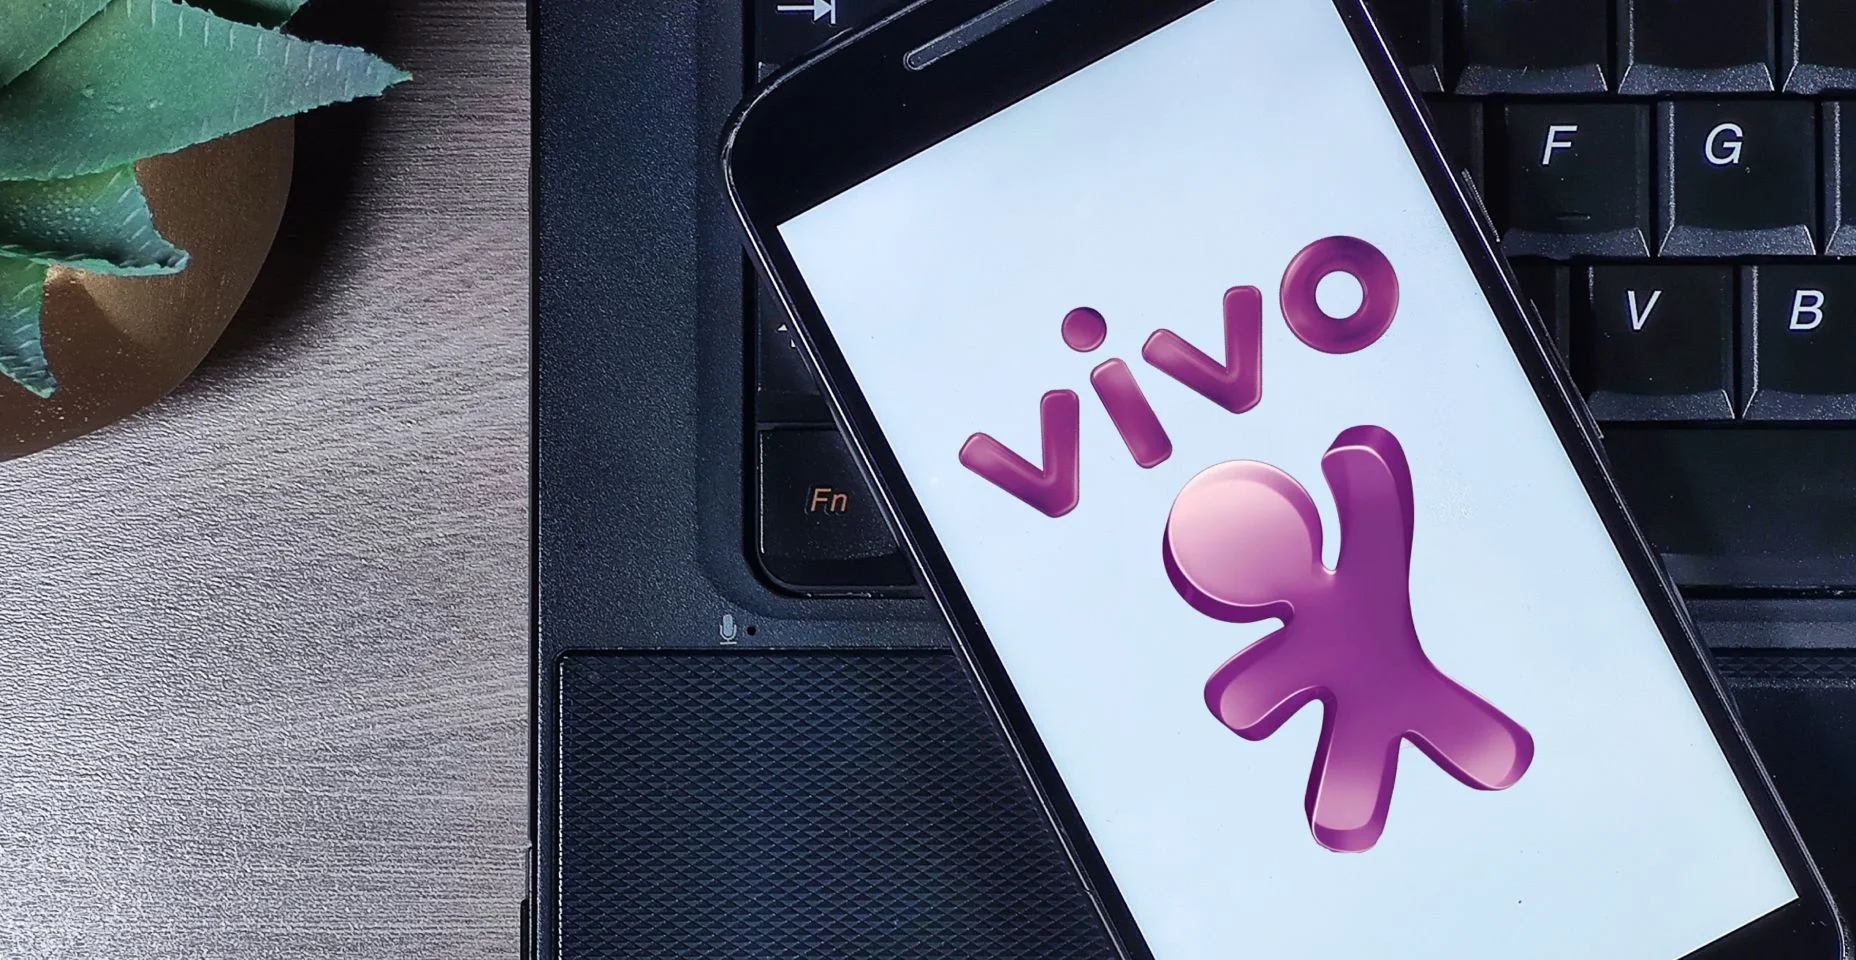 Logotipo da operadora Vivo na tela do smartphone. Vivo é marca registrada da Telefônica Brasil e concessionária de telefonia fixa.